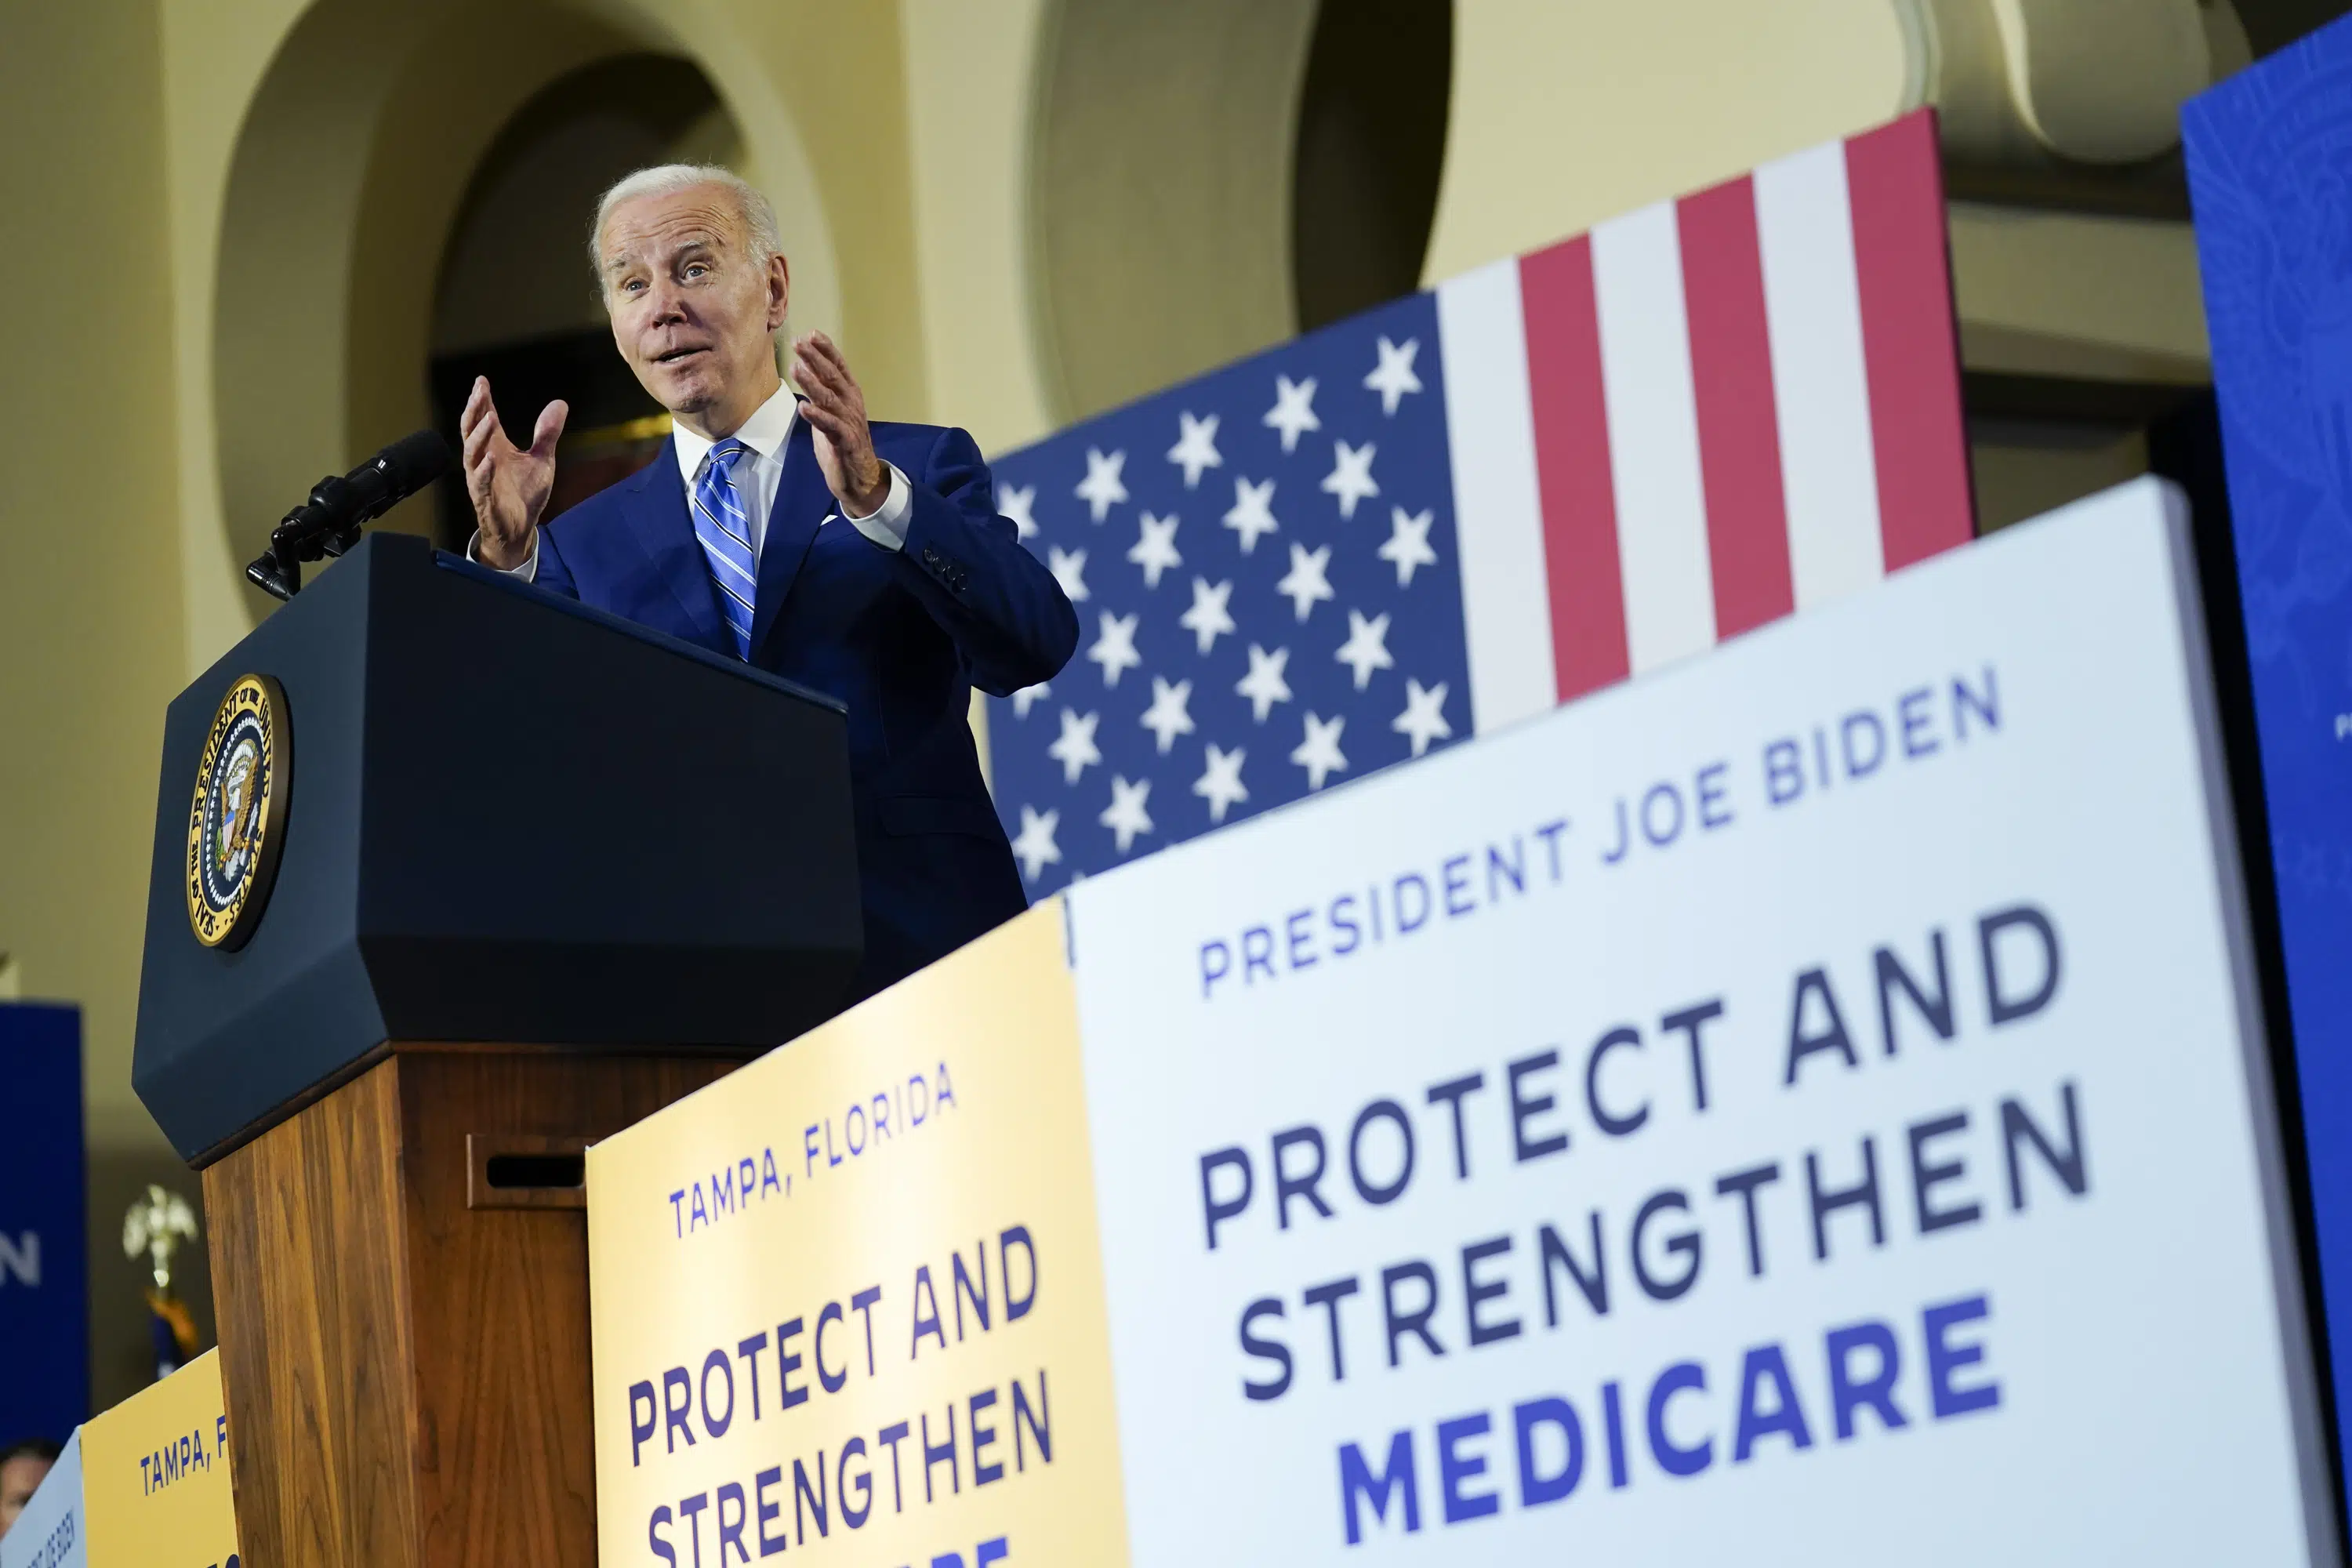  In GOP-held Florida, Biden vows no cuts to Social Security